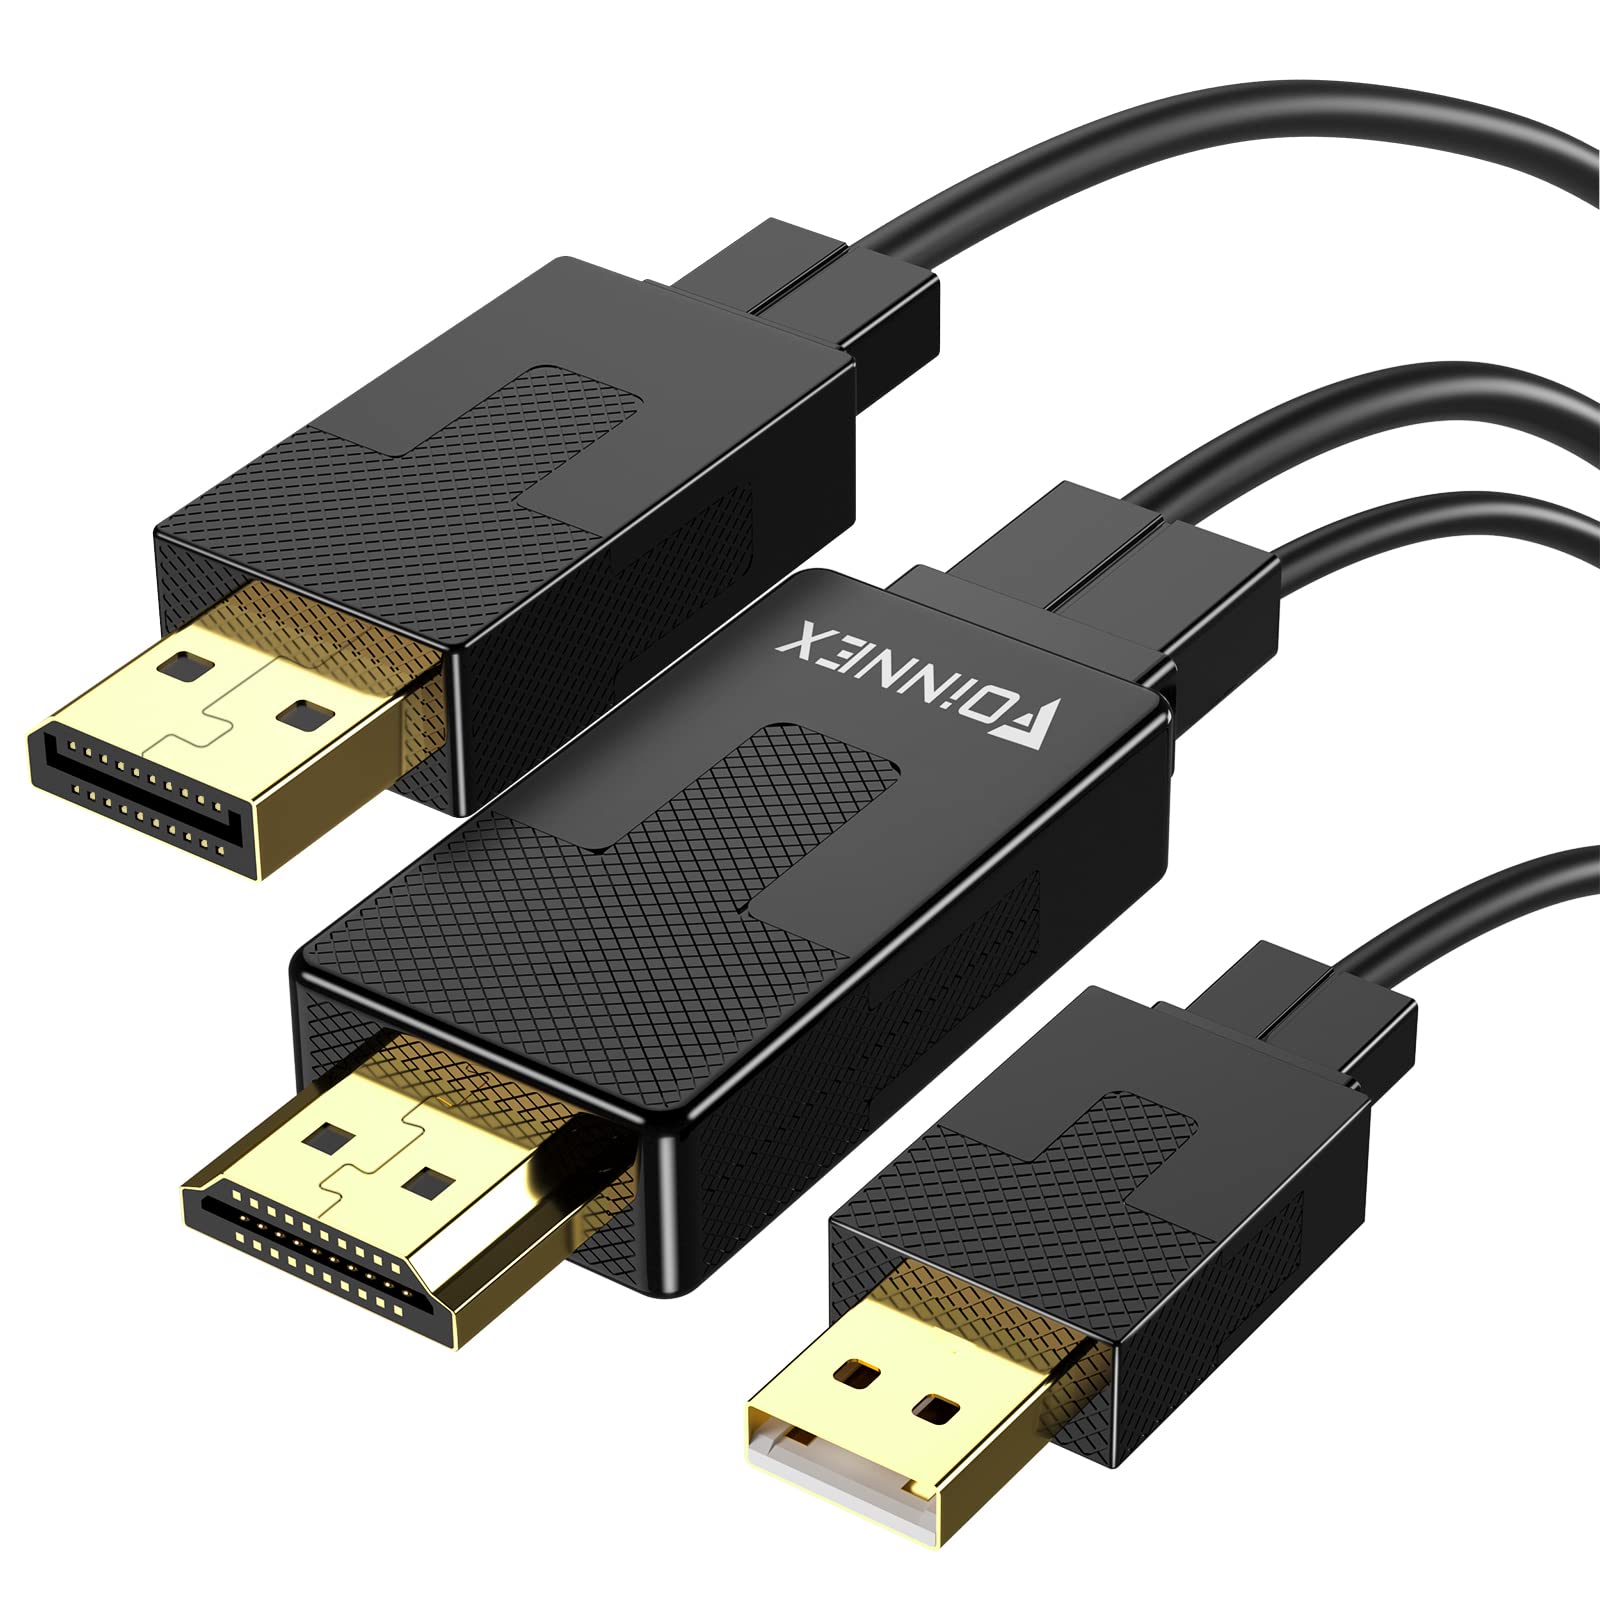 Vérifiez que tous les câbles HDMI ou d'alimentation sont correctement branchés à la Xbox One et au téléviseur.
Remplacez les câbles défectueux si nécessaire.